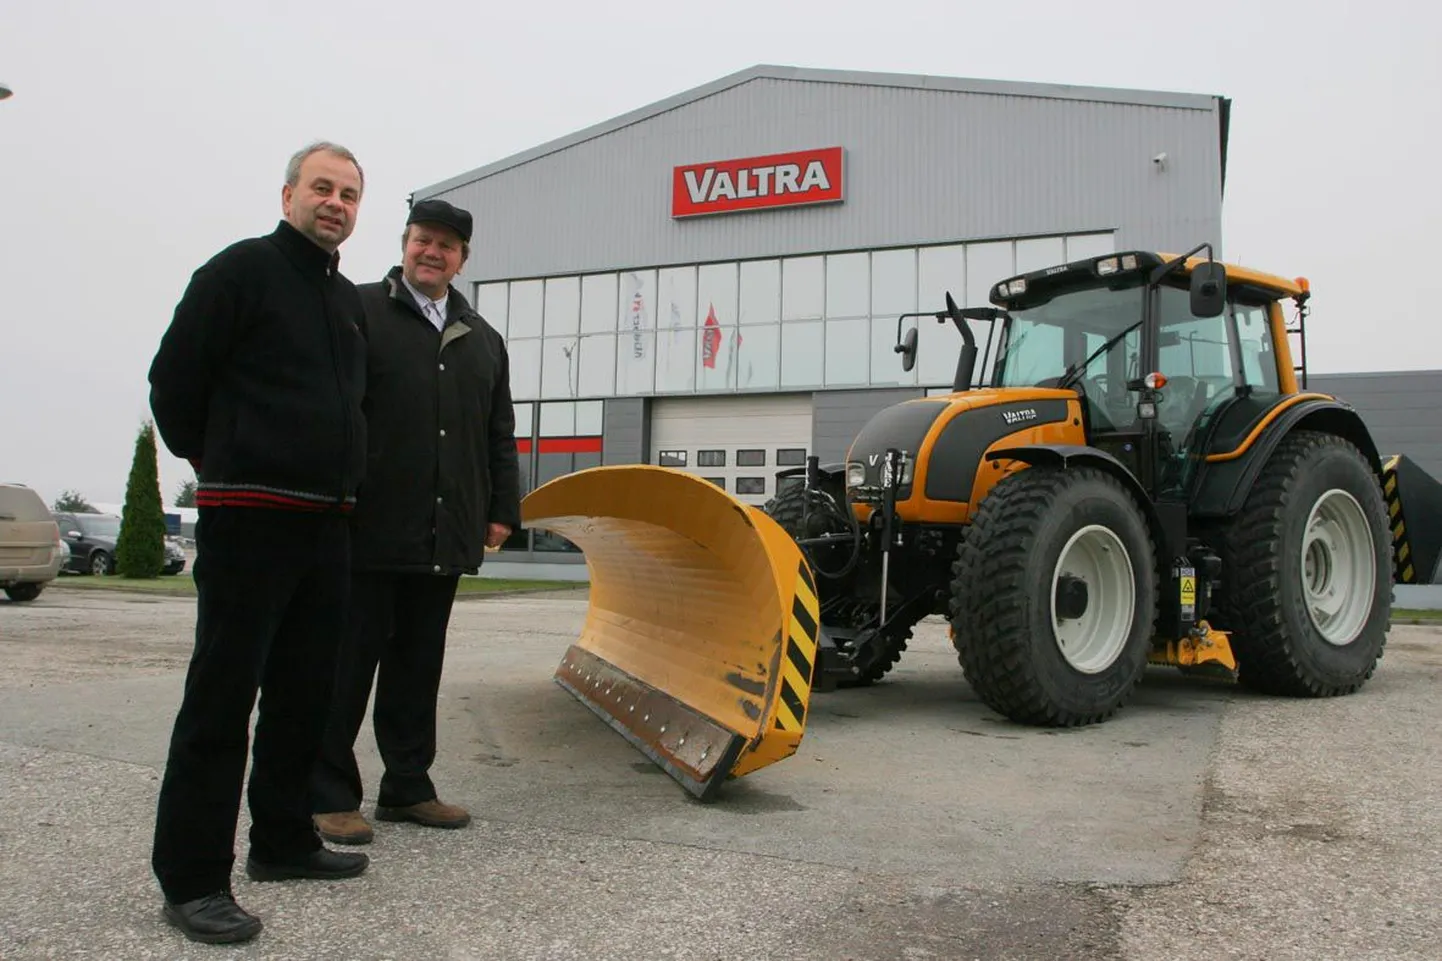 Aktsiaseltsi Taure juhatuse liige Toomas Jürgen (vasakul) ja juhatuse esimees Aaren Kaitsa tunnistavad, et Lõuna-Eesti müügi- ja teeninduskeskuse avamisega kasvas ettevõtte käive eelmisel aastal märgatavalt. Pildile jäi koos nendega traktor, mis hakkab sel talvel puhtana hoidma Türi linna tänavaid.